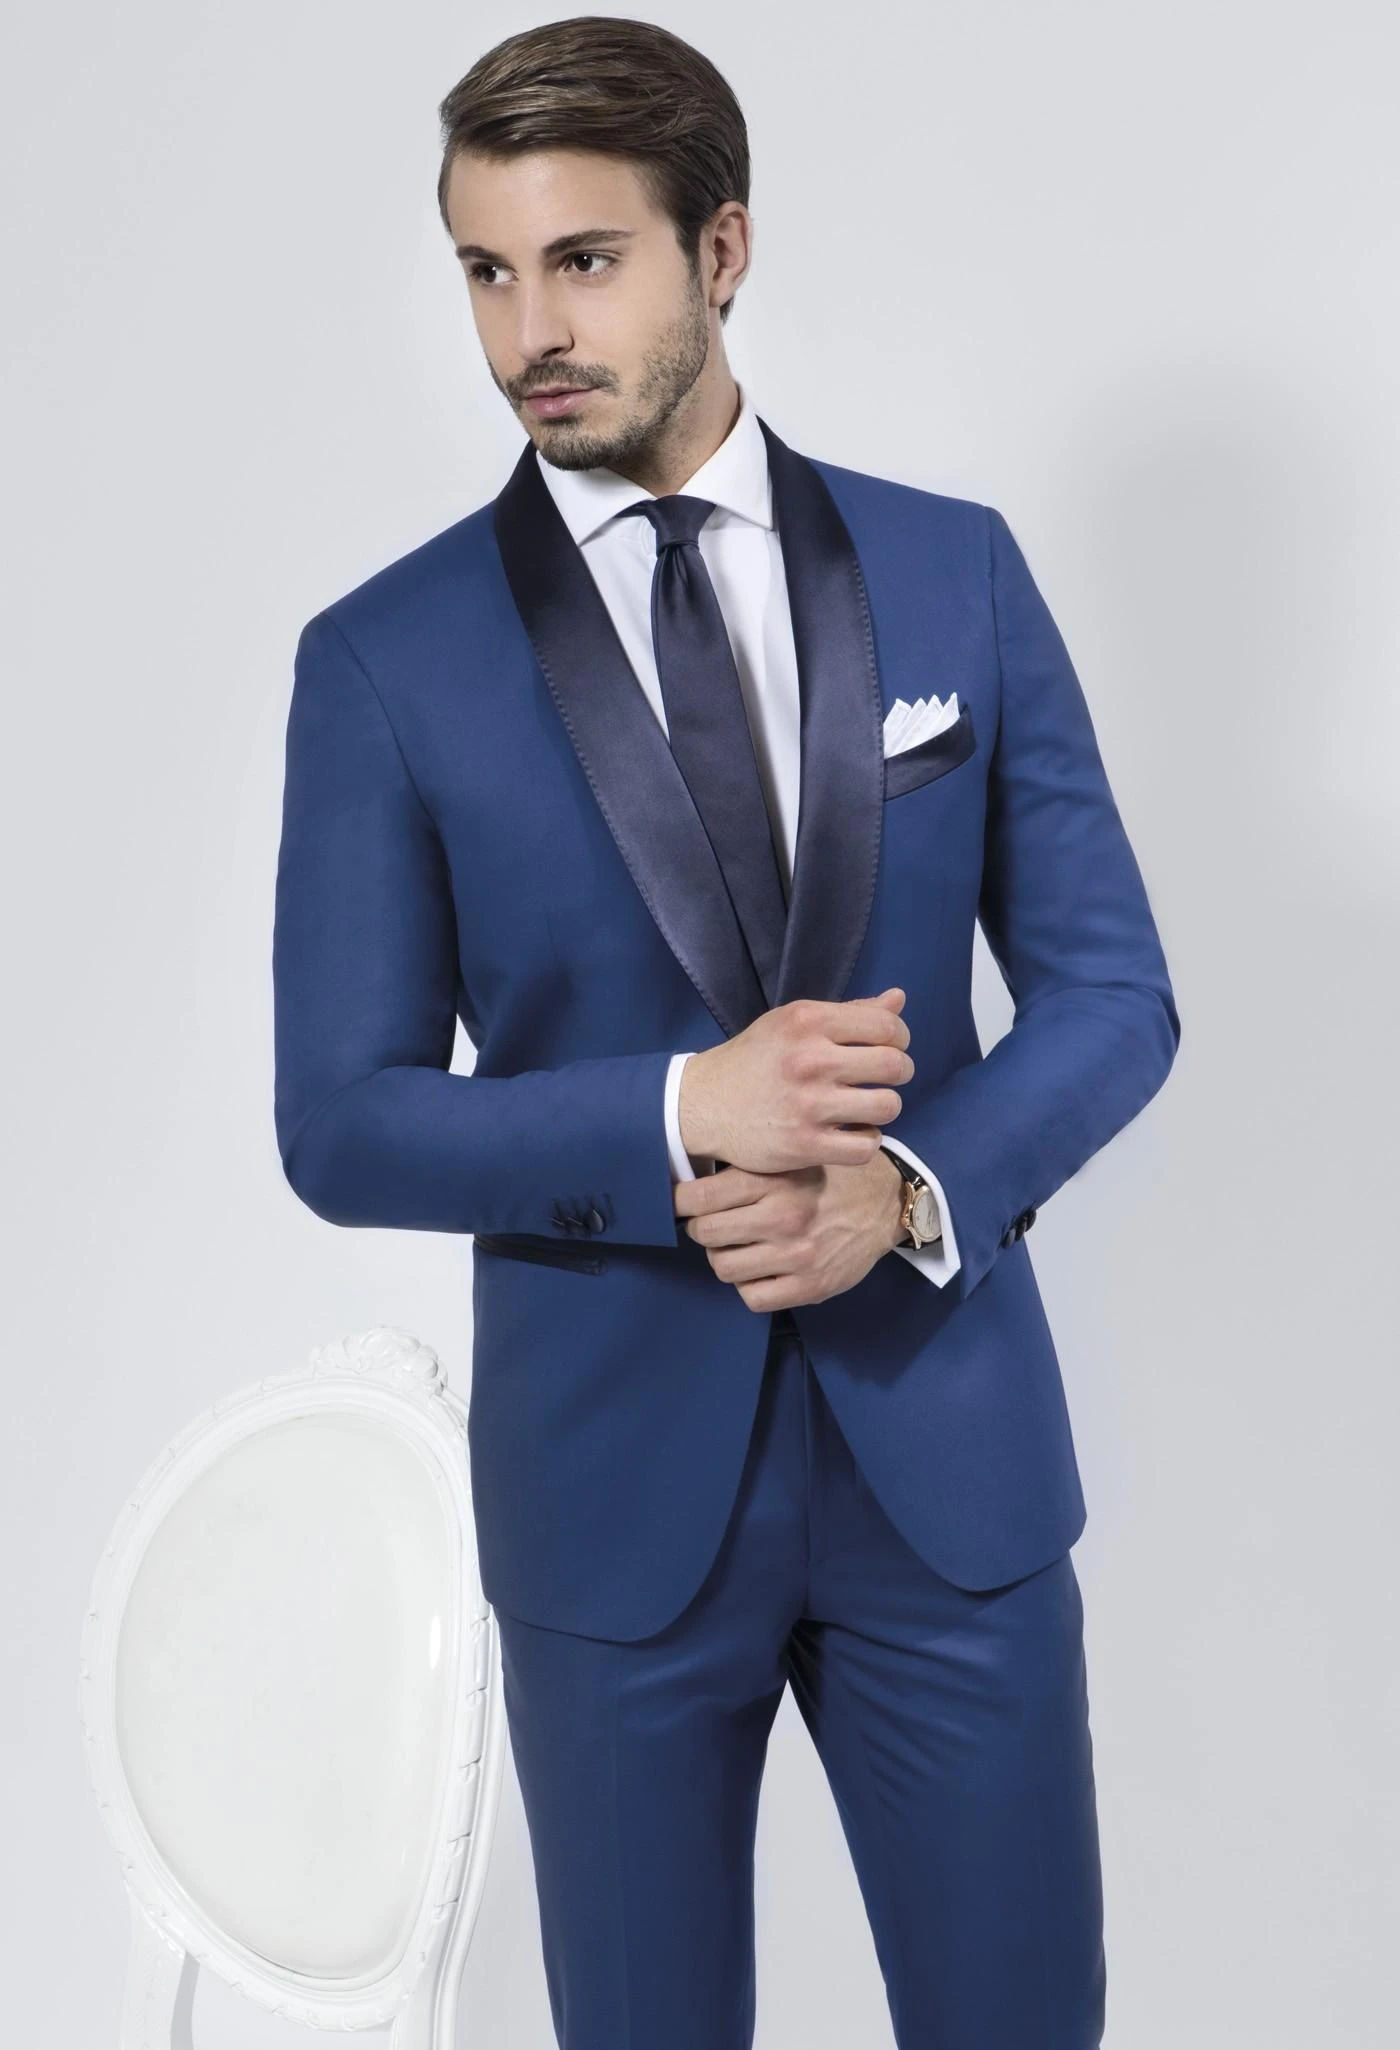 Trajes para hombre con pantalones smoking traje azul marino mantón de la solapa de de los trajes azul de la boda para hombre KO6006A|suit size|suit sportsuit outerwear - AliExpress